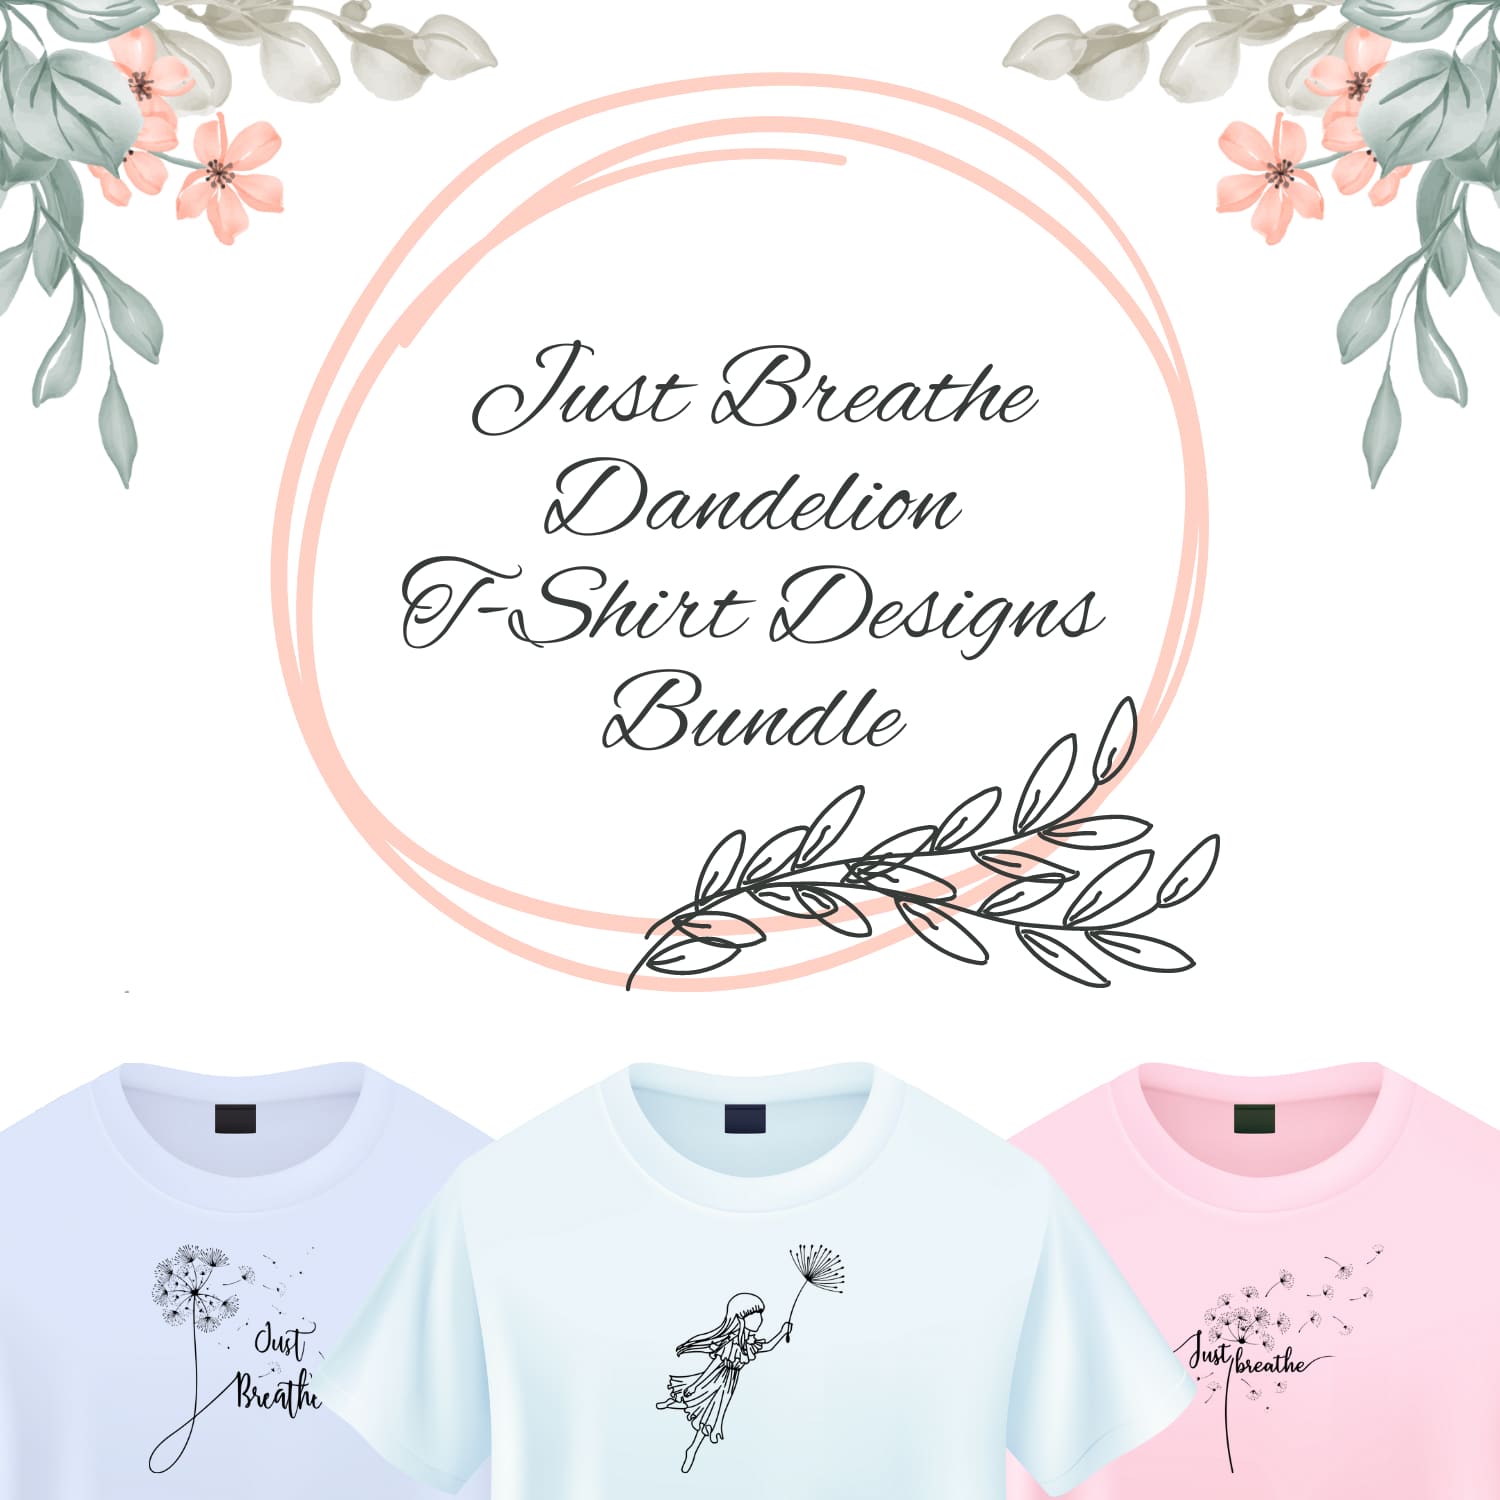 Dandelion Watercolor T-shirt - Printed Design T-shirt - Printed